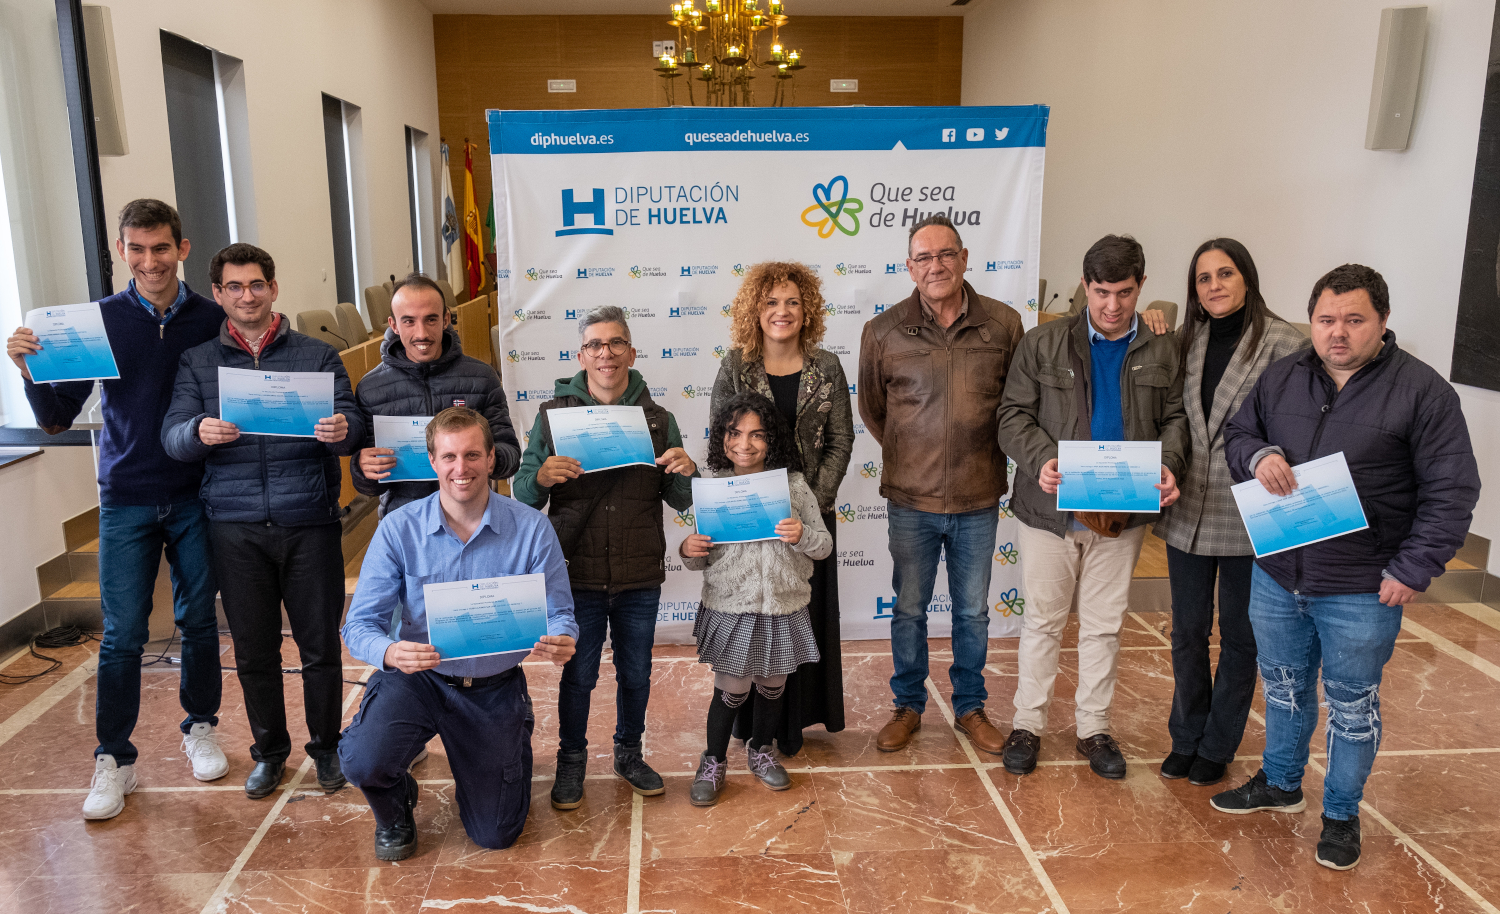 8 jóvenes con diversidad funcional finalizan sus prácticas formativas en Diputación de la mano de Avadi Down Huelva